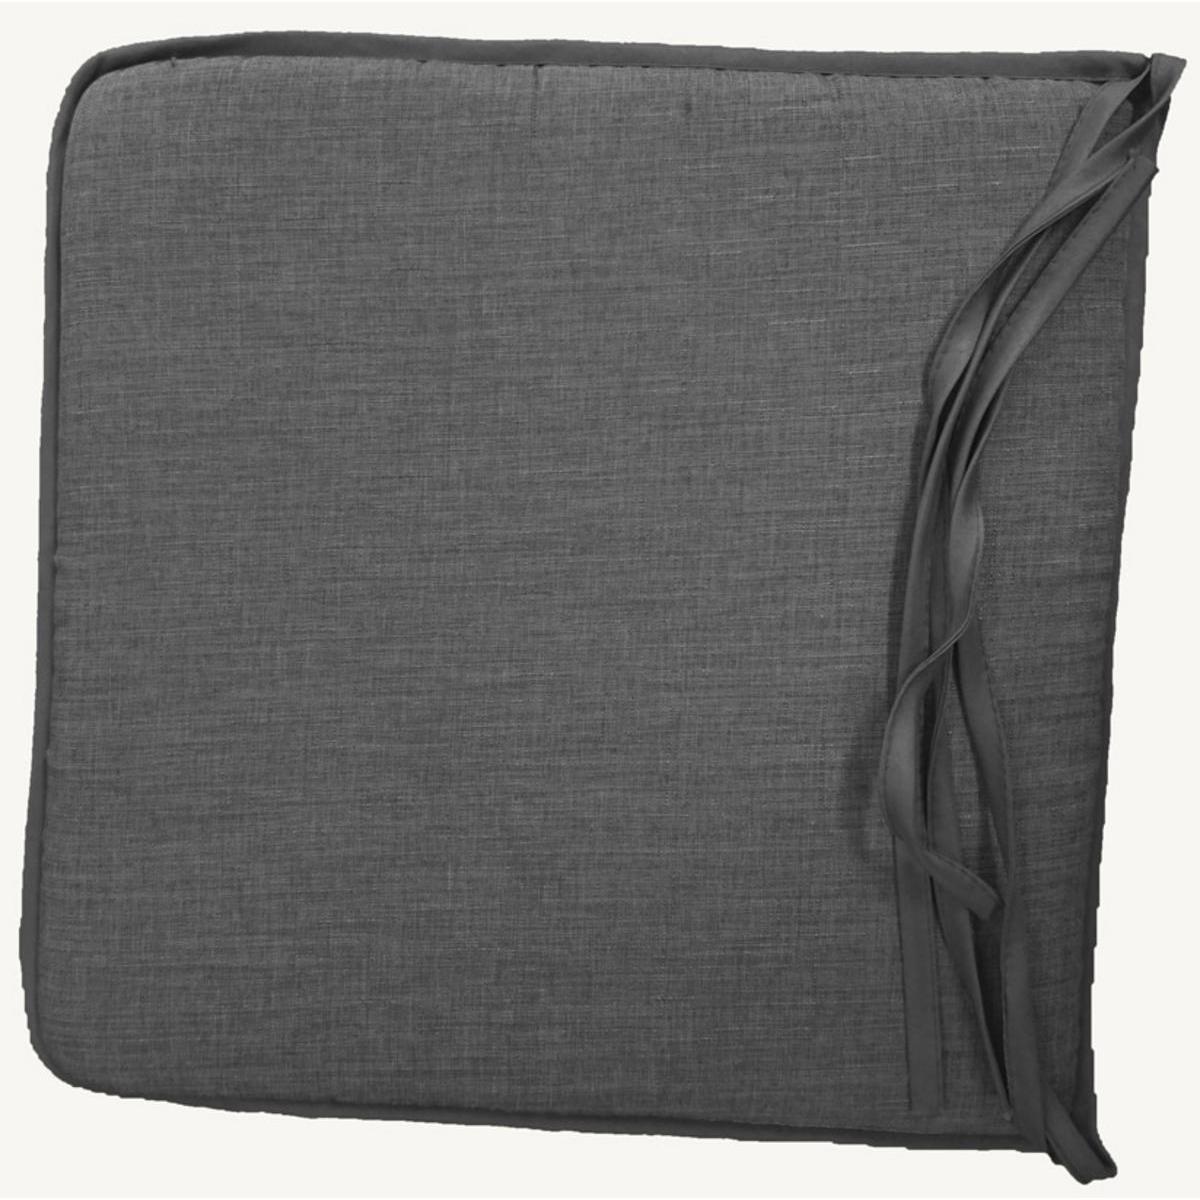 Galette de chaise - 100 % Polyester - 40 x 40 cm - Gris